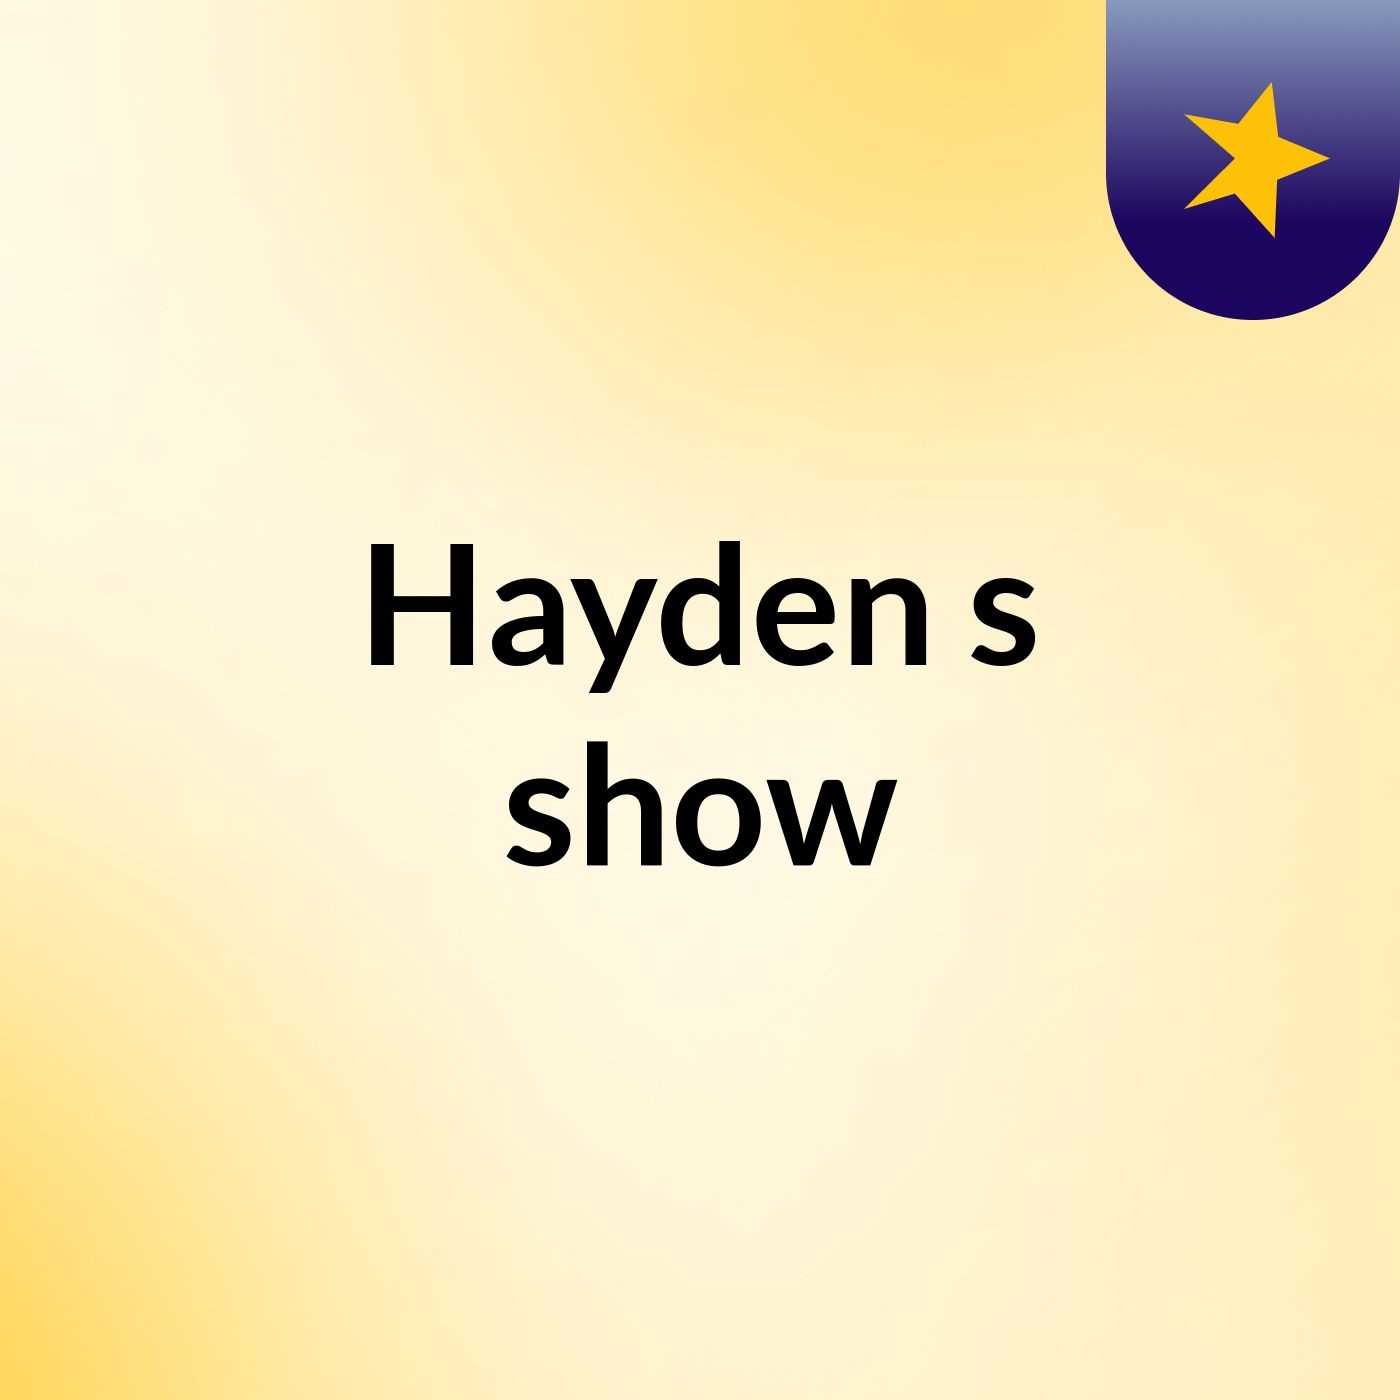 Hayden's show